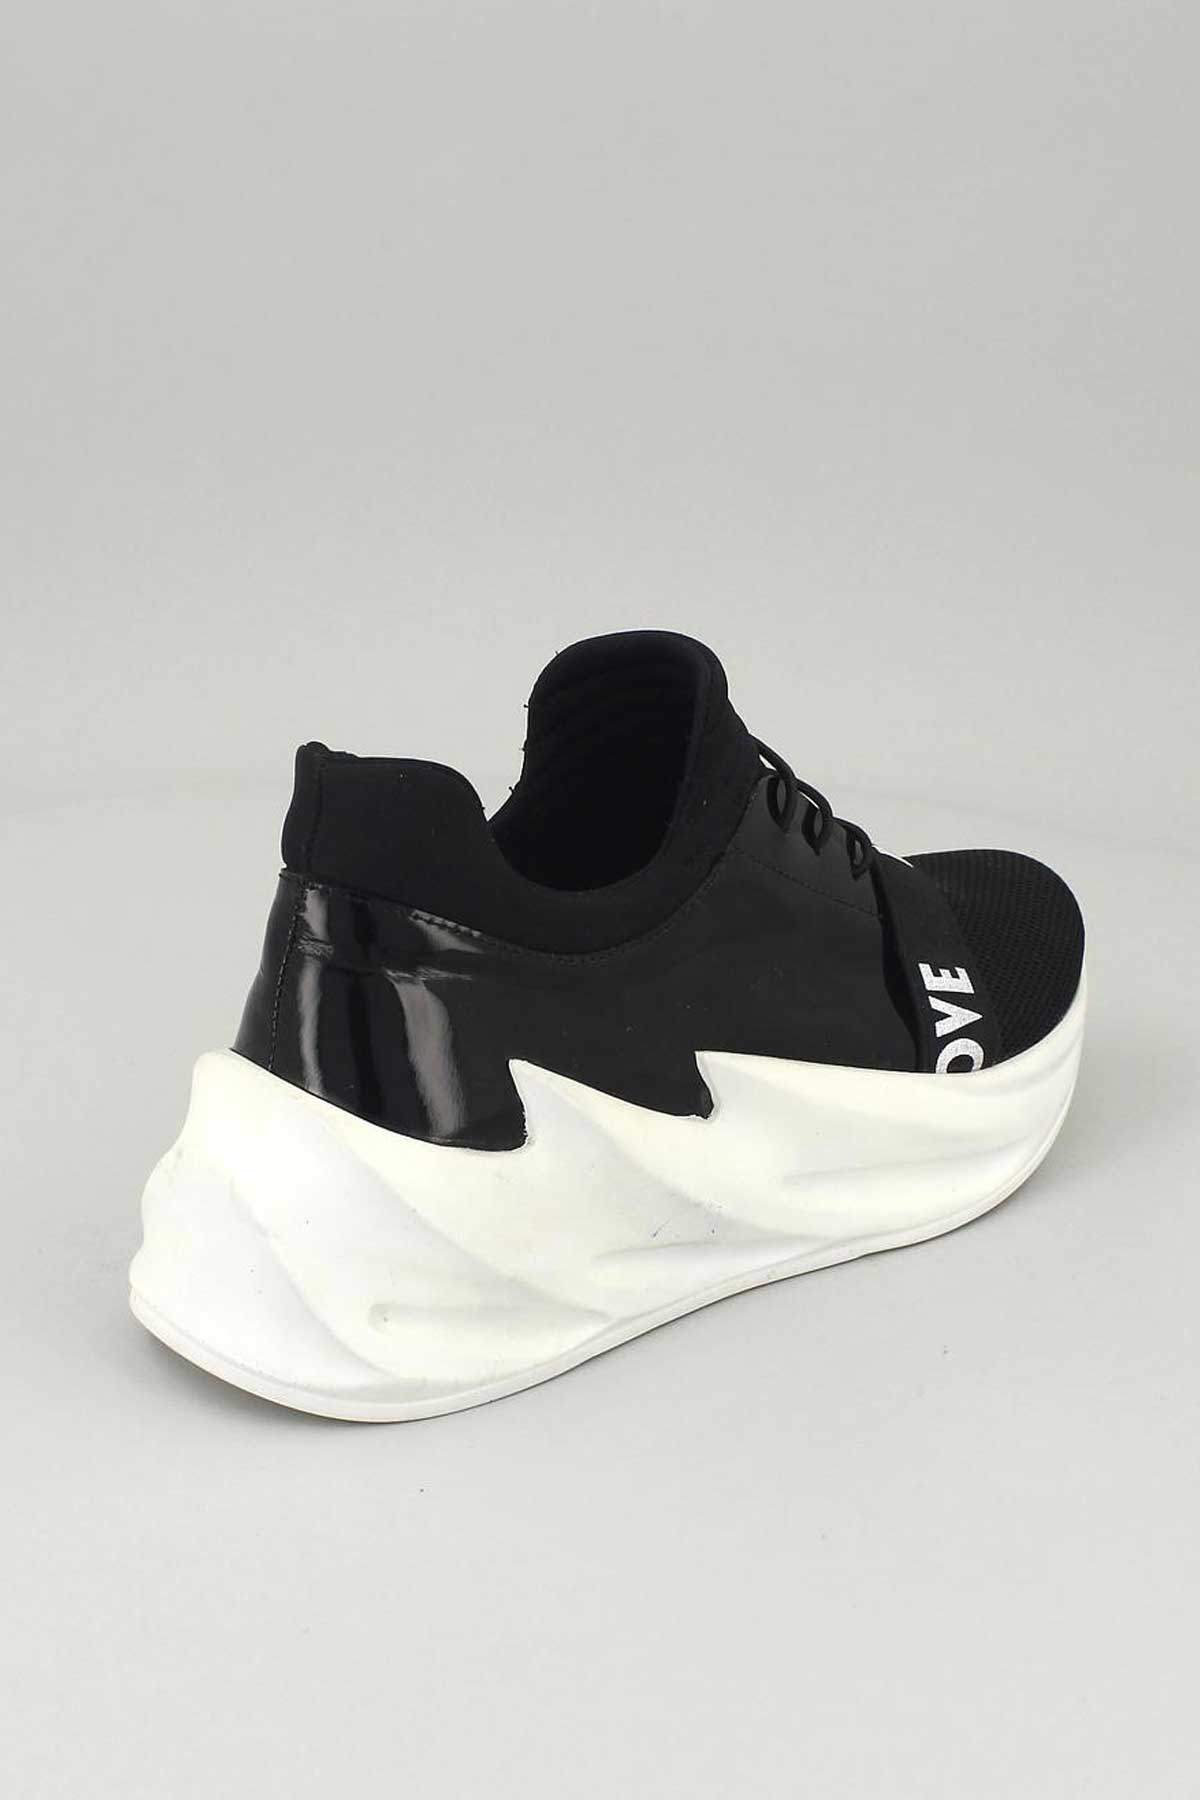 Kadın Deri Sneakers Siyah 13791Y - Thumbnail